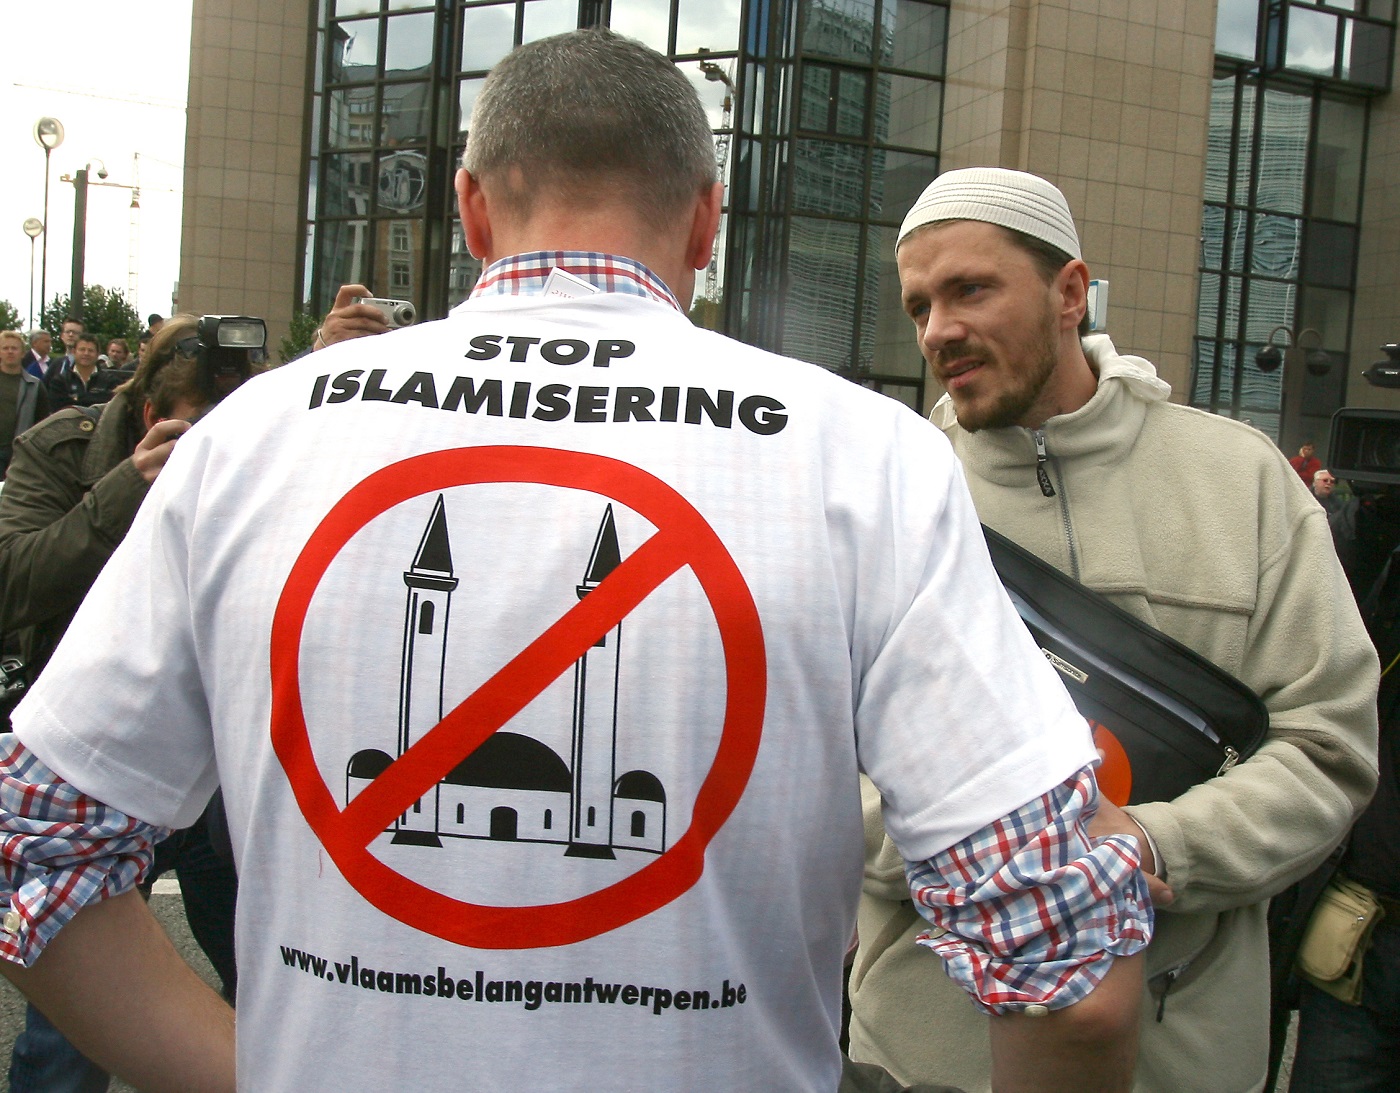 الإسلاموفوبيا والإعلام:  المظاهر المعاصرة  لمعاداة الإسلام